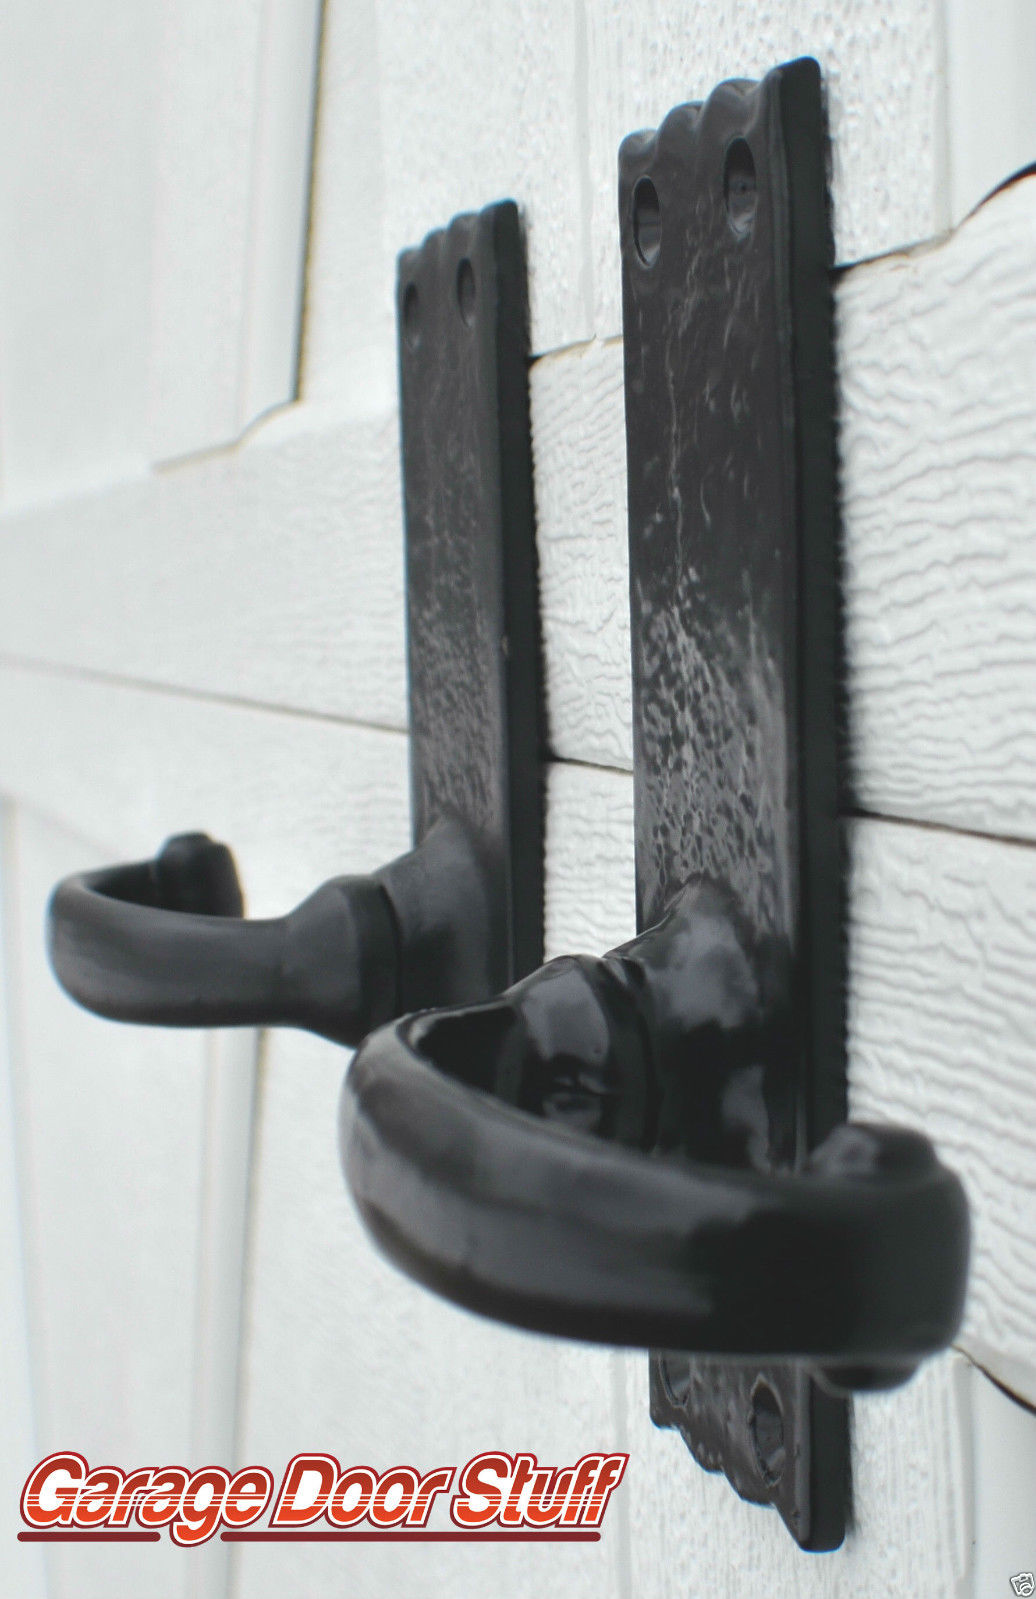 house door handles